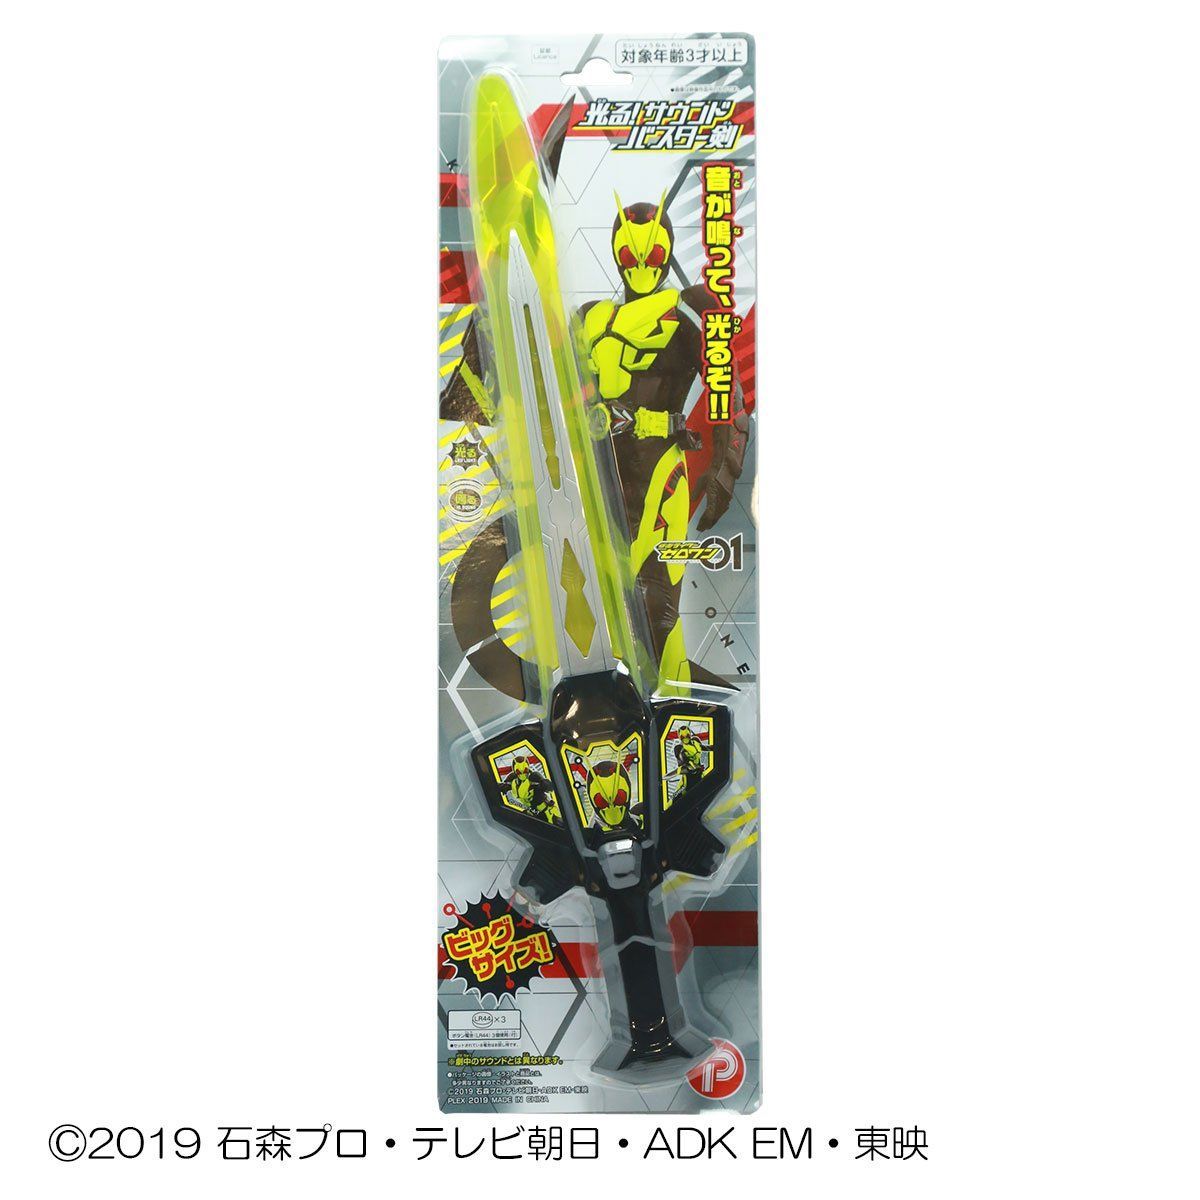 仮面ライダーゼロワン 光る サウンドバスターガン 光る サウンドバスター剣 仮面ライダーシリーズ おもちゃ プレミアムバンダイ公式通販